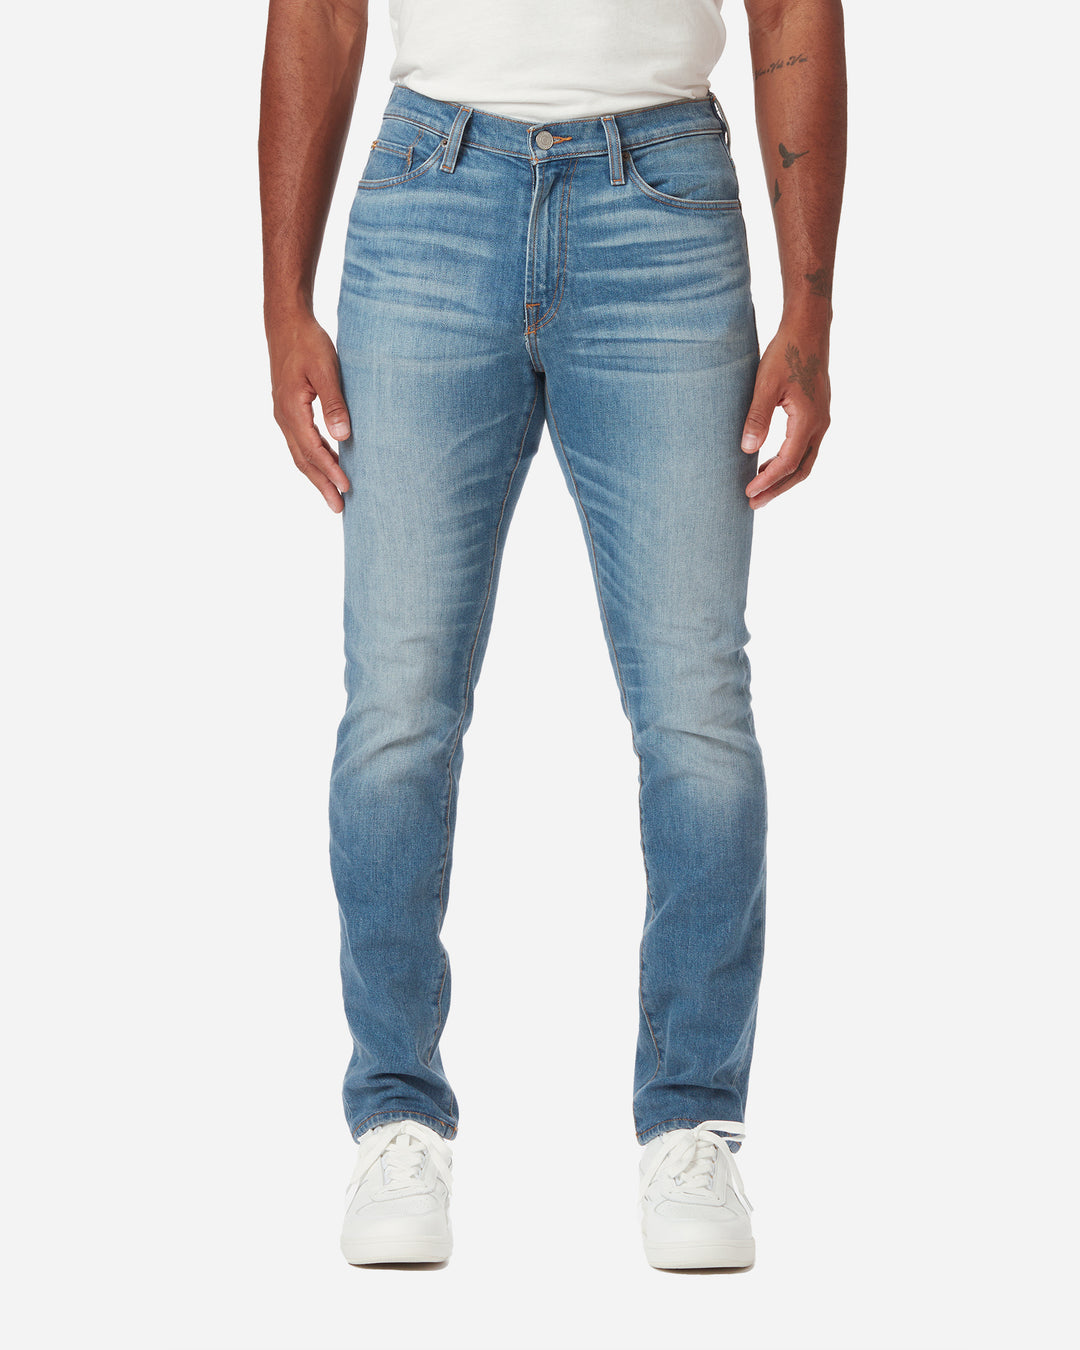 Men's Athletic Fit Jeans - Shop Athletic Jeans